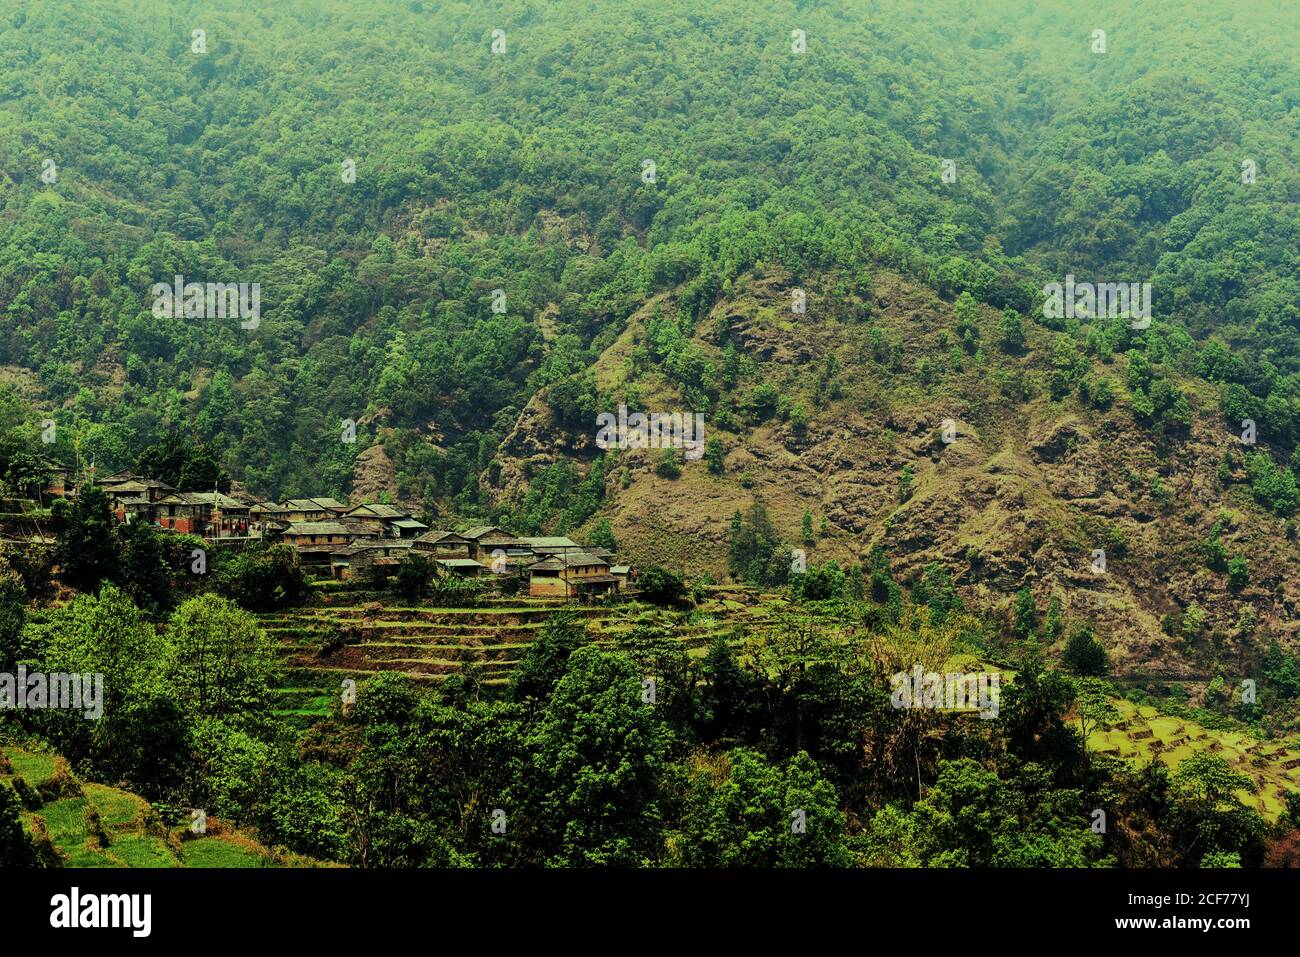 Am Hang des Panchase Mountain liegt Sidhane landwirtschaftlichen Dorf, wo die Gemeinschaft auch Ökotourismus betreibt. Sidhane, Gandaki Pradesh, Nepal. Stockfoto